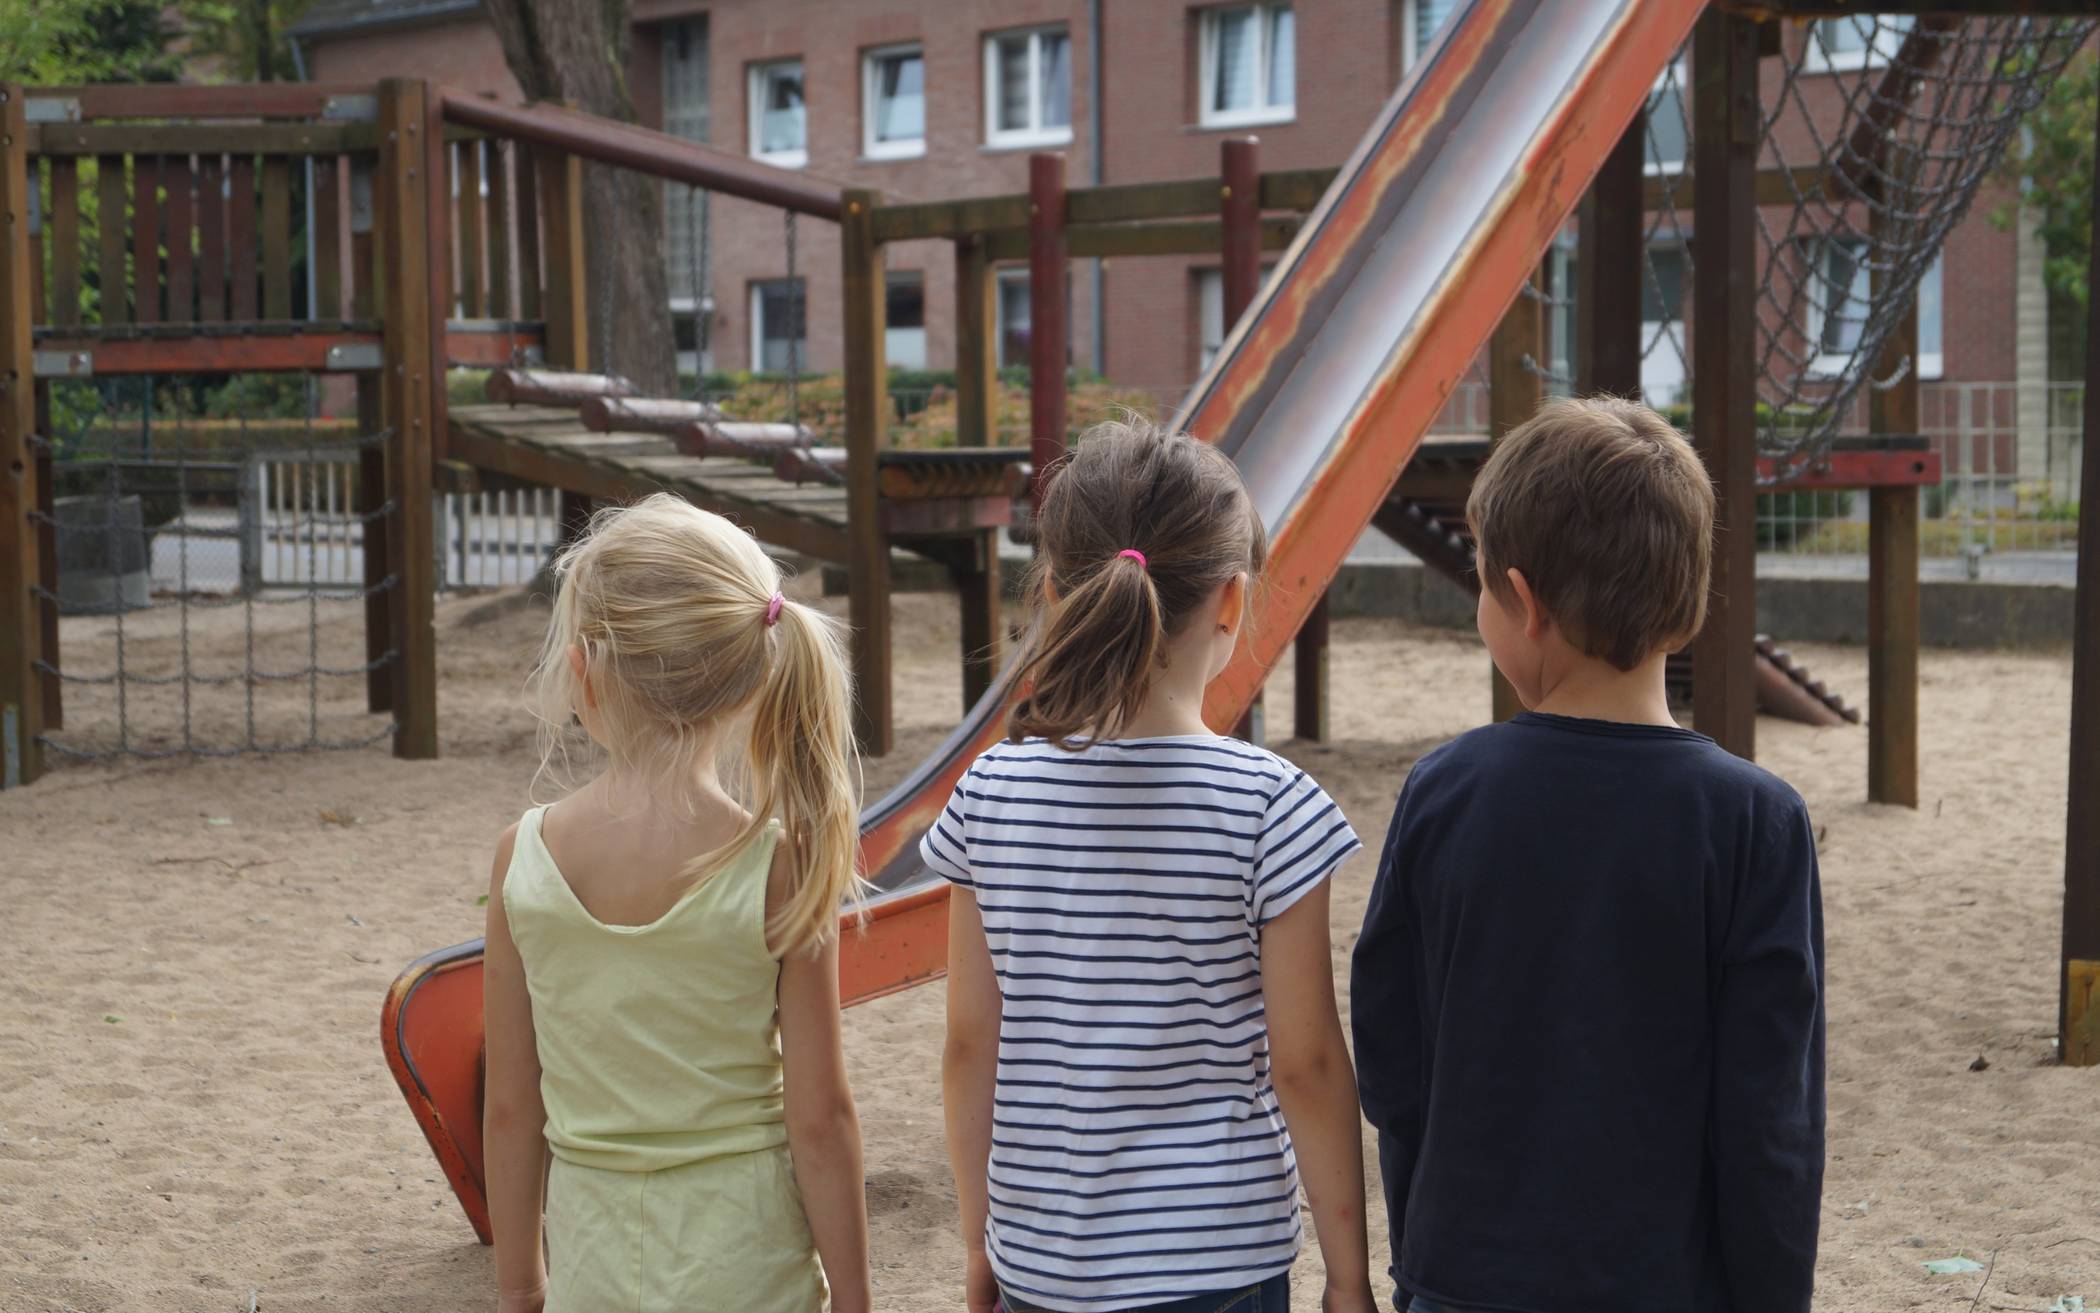  Die Kinder haben inzwischen Angst auf dem Spielplatz – versucht jemand, sie zu verletzen? 